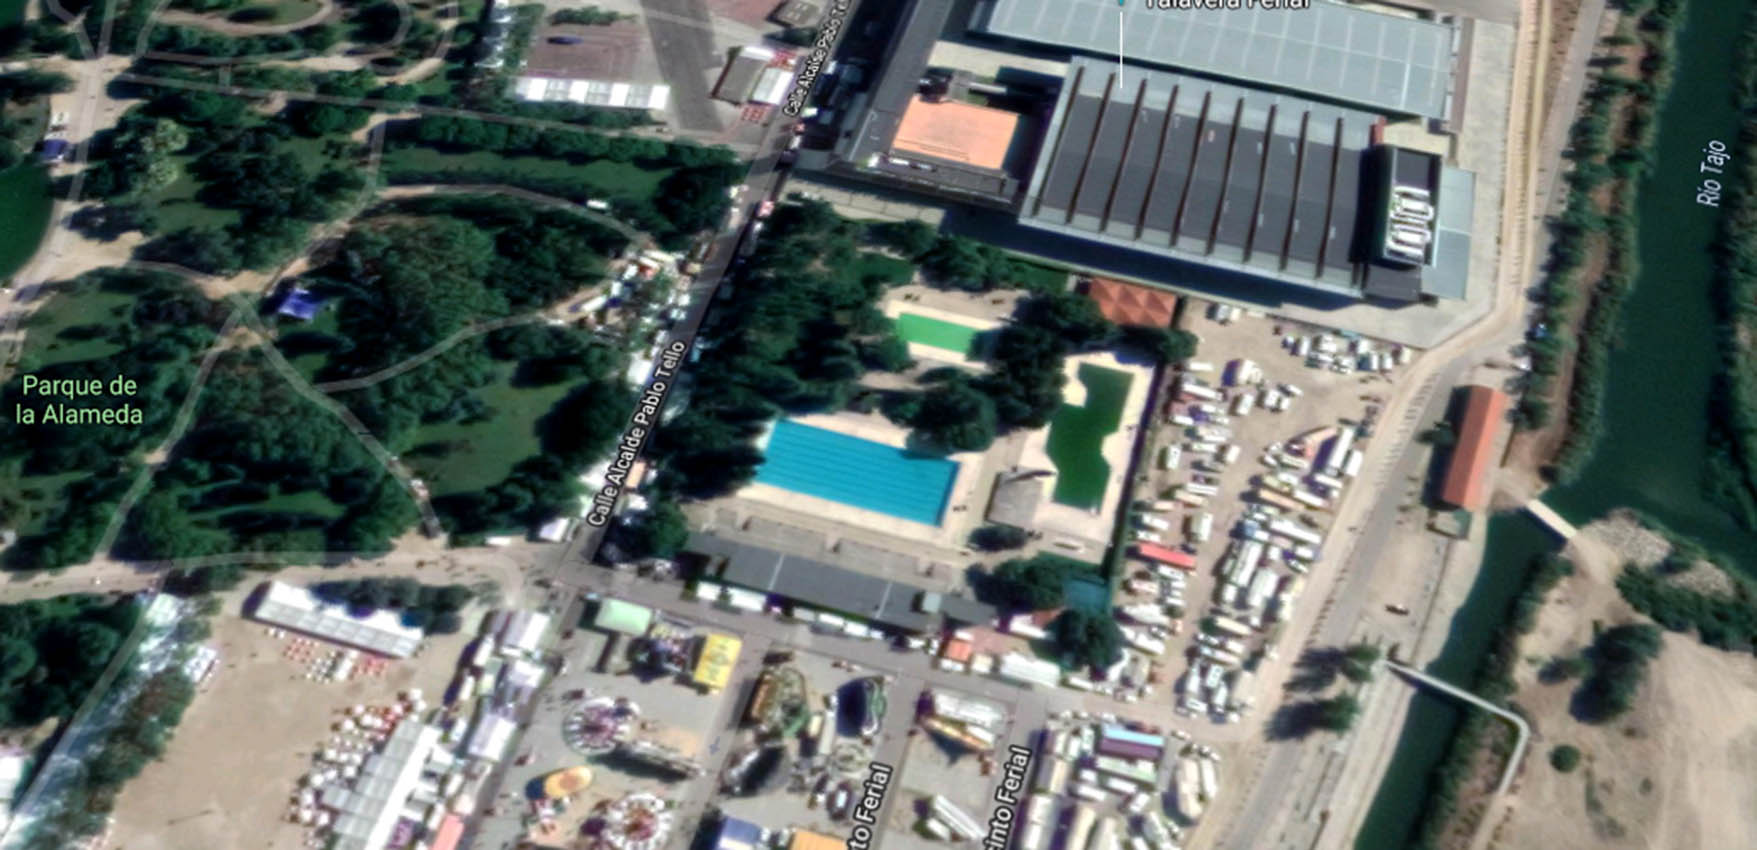 Imagen aérea de la piscina municipal La Alameda.